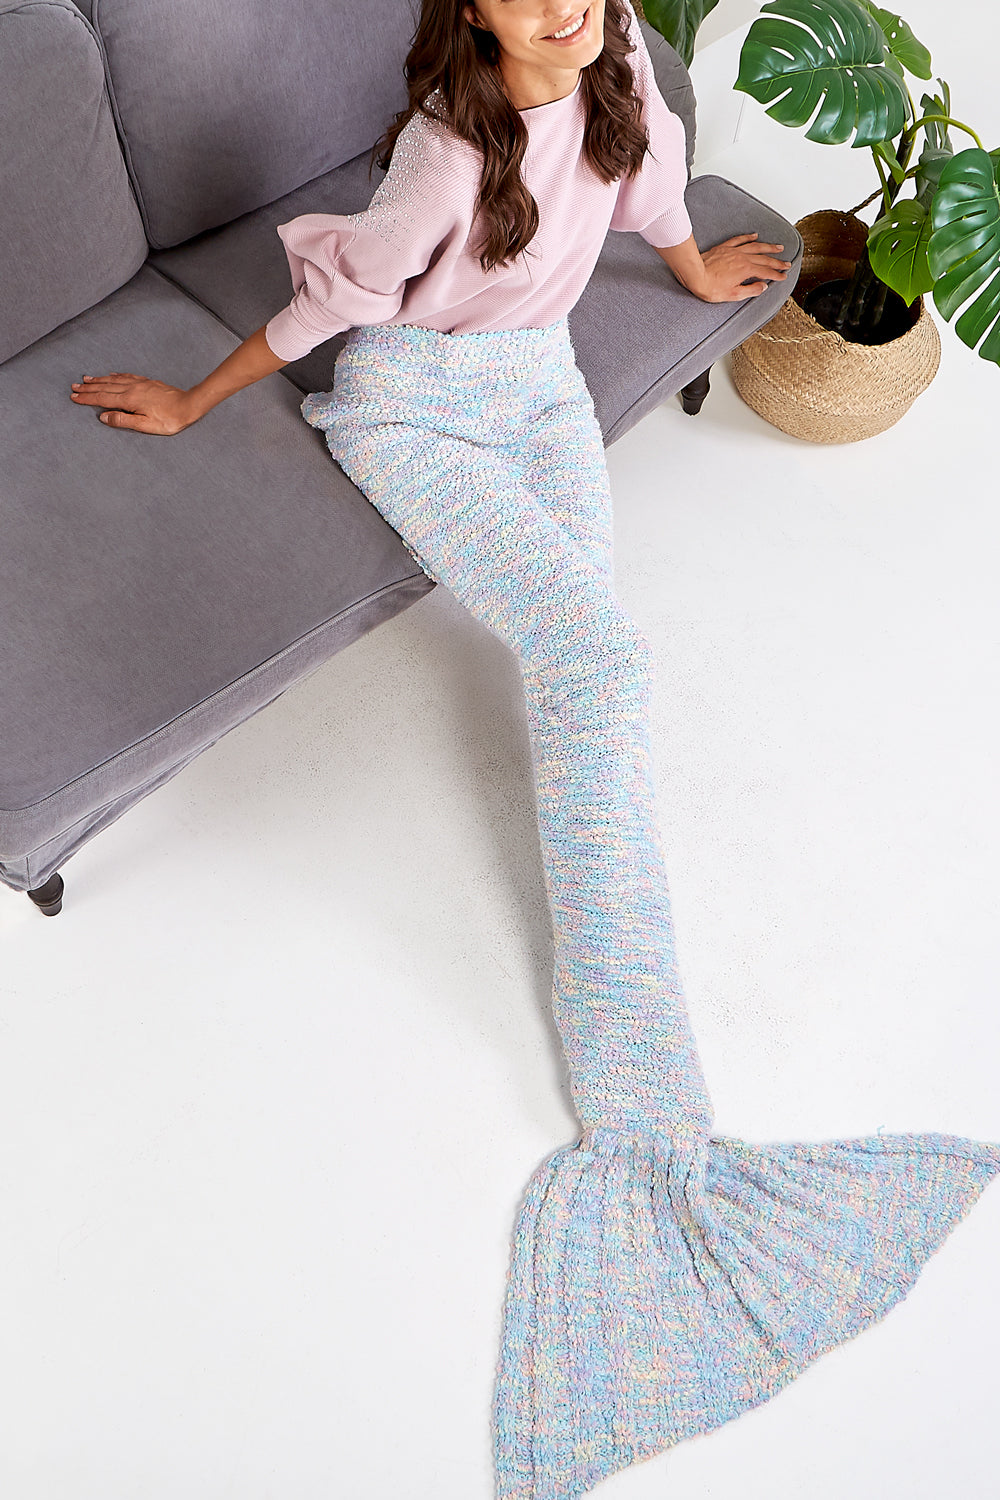 Mermaid Space Dye Boucle Blanket